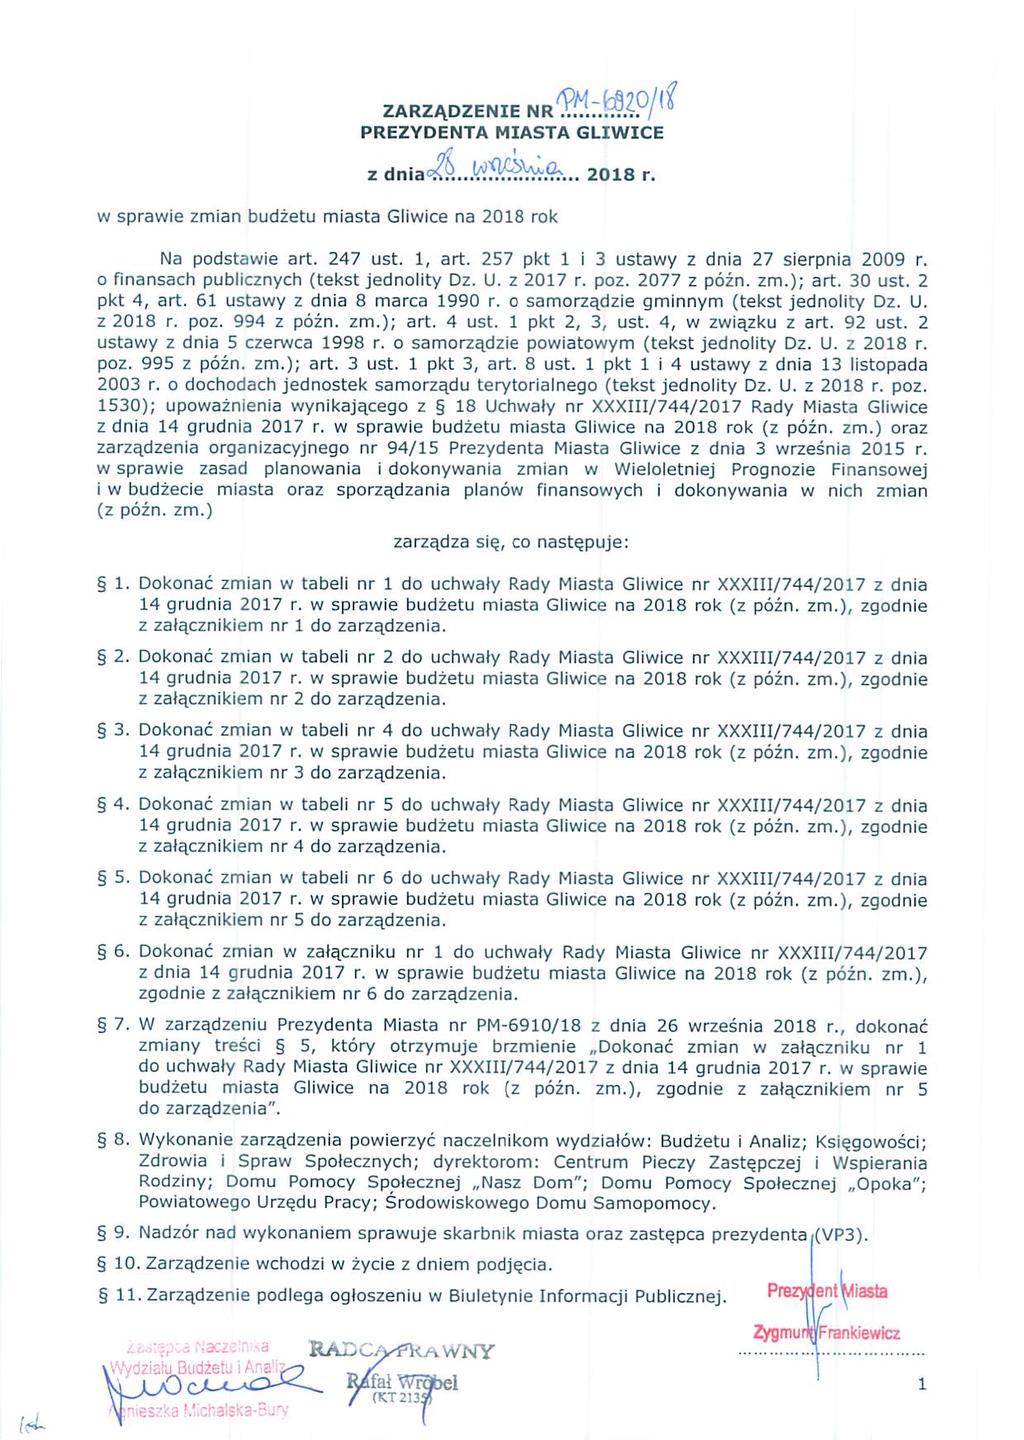 ZARZĄDZENIEtg PREZYDENTA MIASTA GLIWICE z 2018 r. w sprawie zmian budżetu miasta Gliwice na 2018 rok Na podstawie art. 247 ust. 1, art. 257 pkt 1 i 3 ustawy z dnia 27 sierpnia 2009 r.